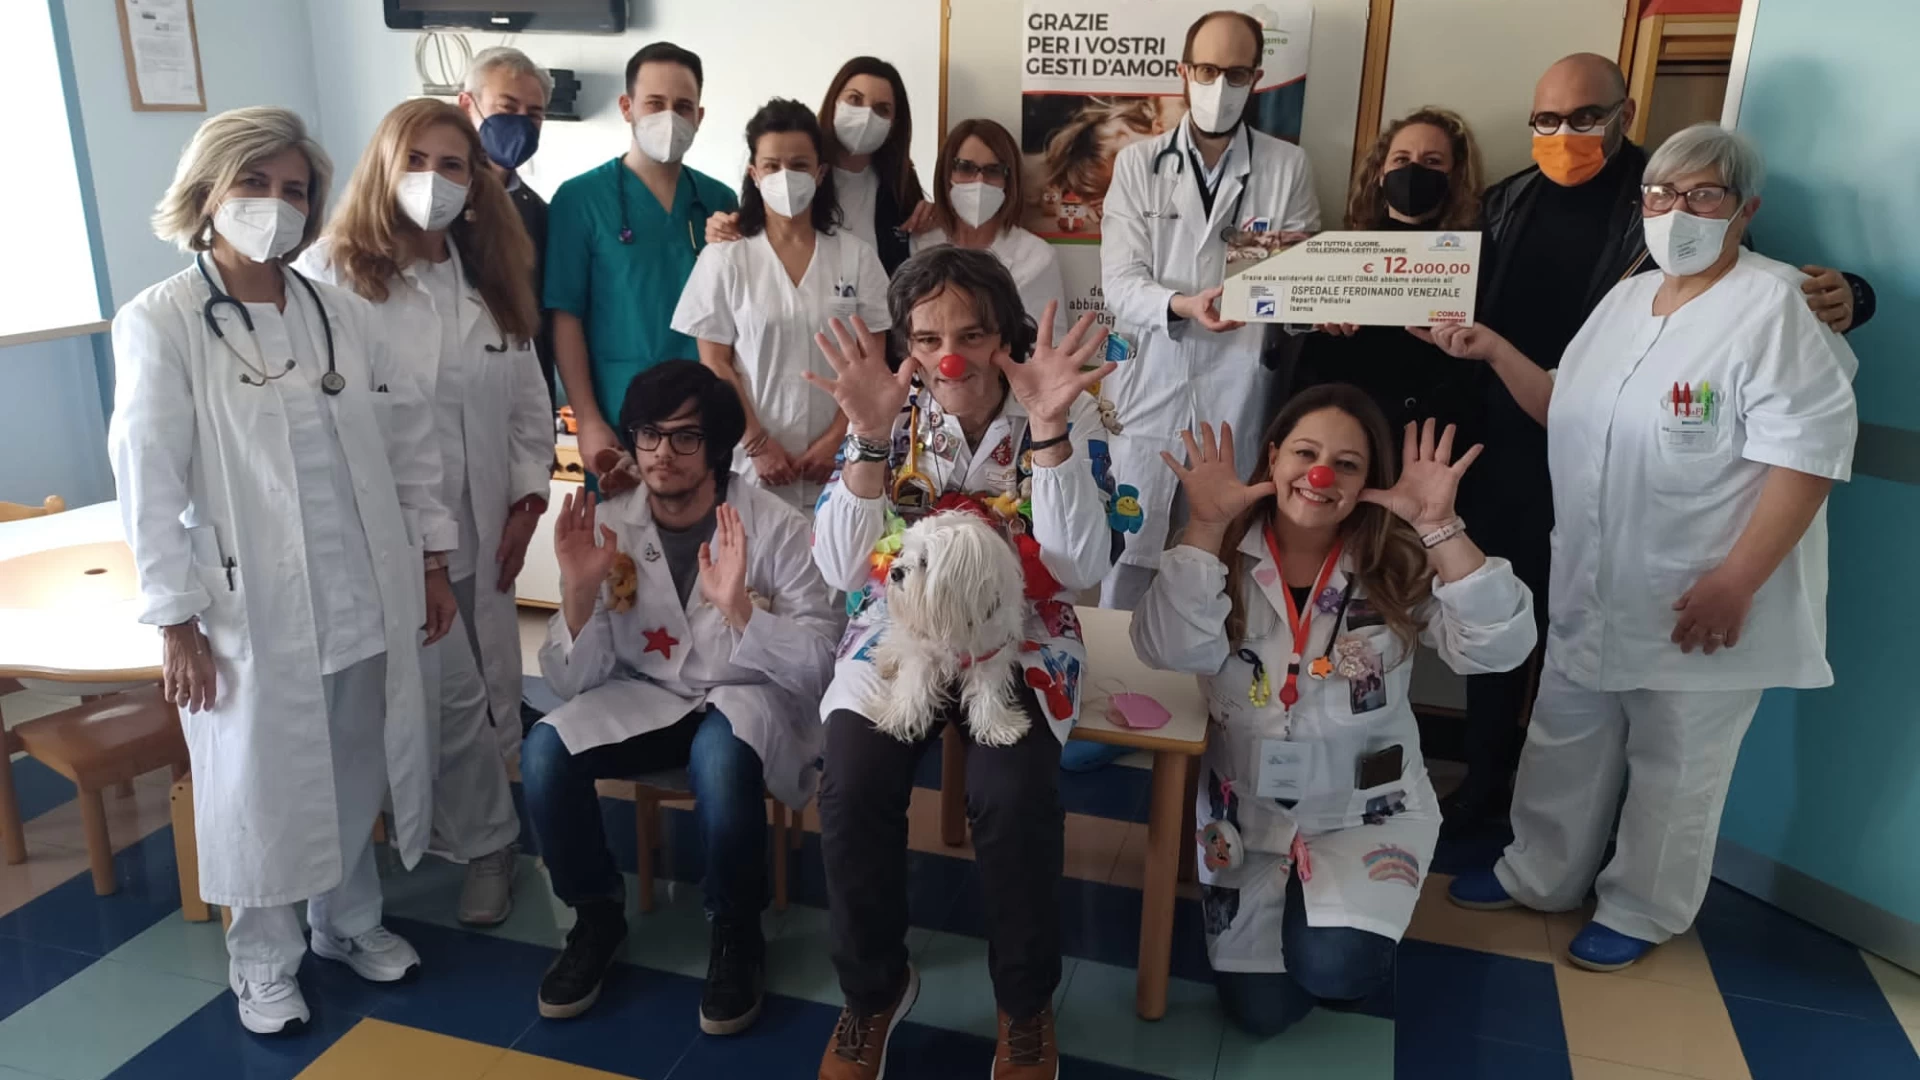 Conad Adriatico dona 12.000 euro a favore del reparto pediatrico dell’Ospedale Ferdinando Veneziale di Isernia